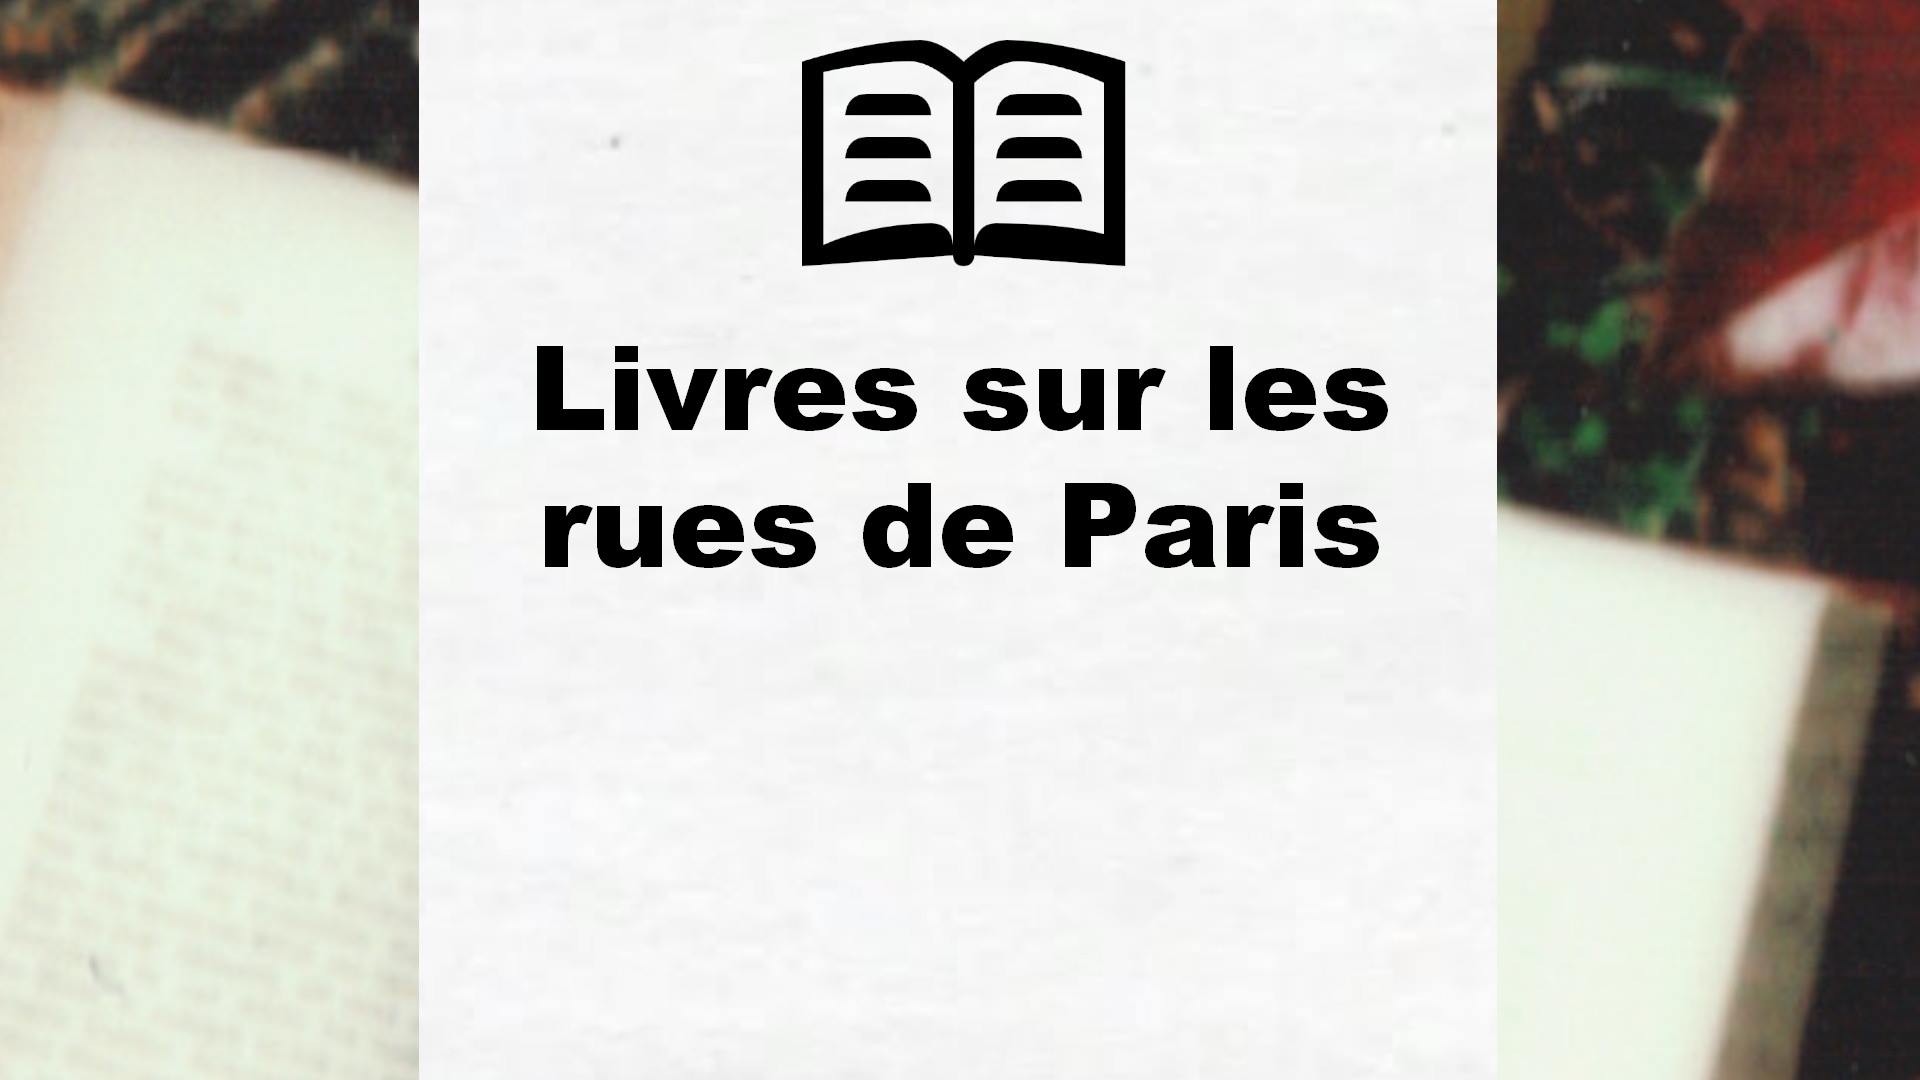 Livres sur les rues de Paris